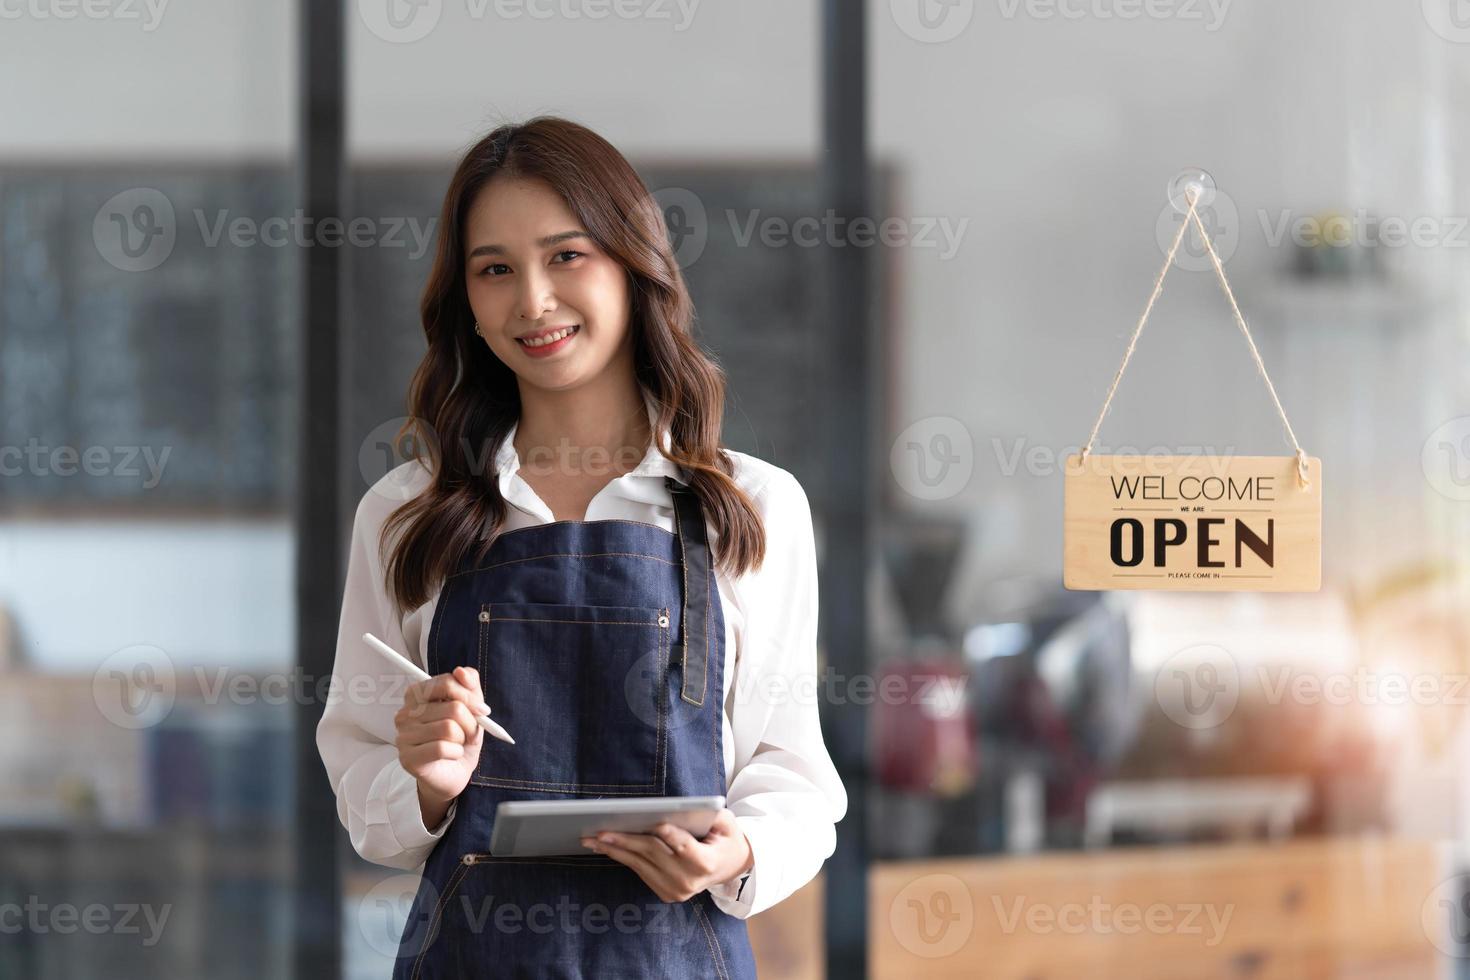 hermosa joven barista asiática en delantal sosteniendo una tableta y parada frente a la puerta de la cafetería con un letrero abierto. concepto de inicio de propietario de negocio. foto